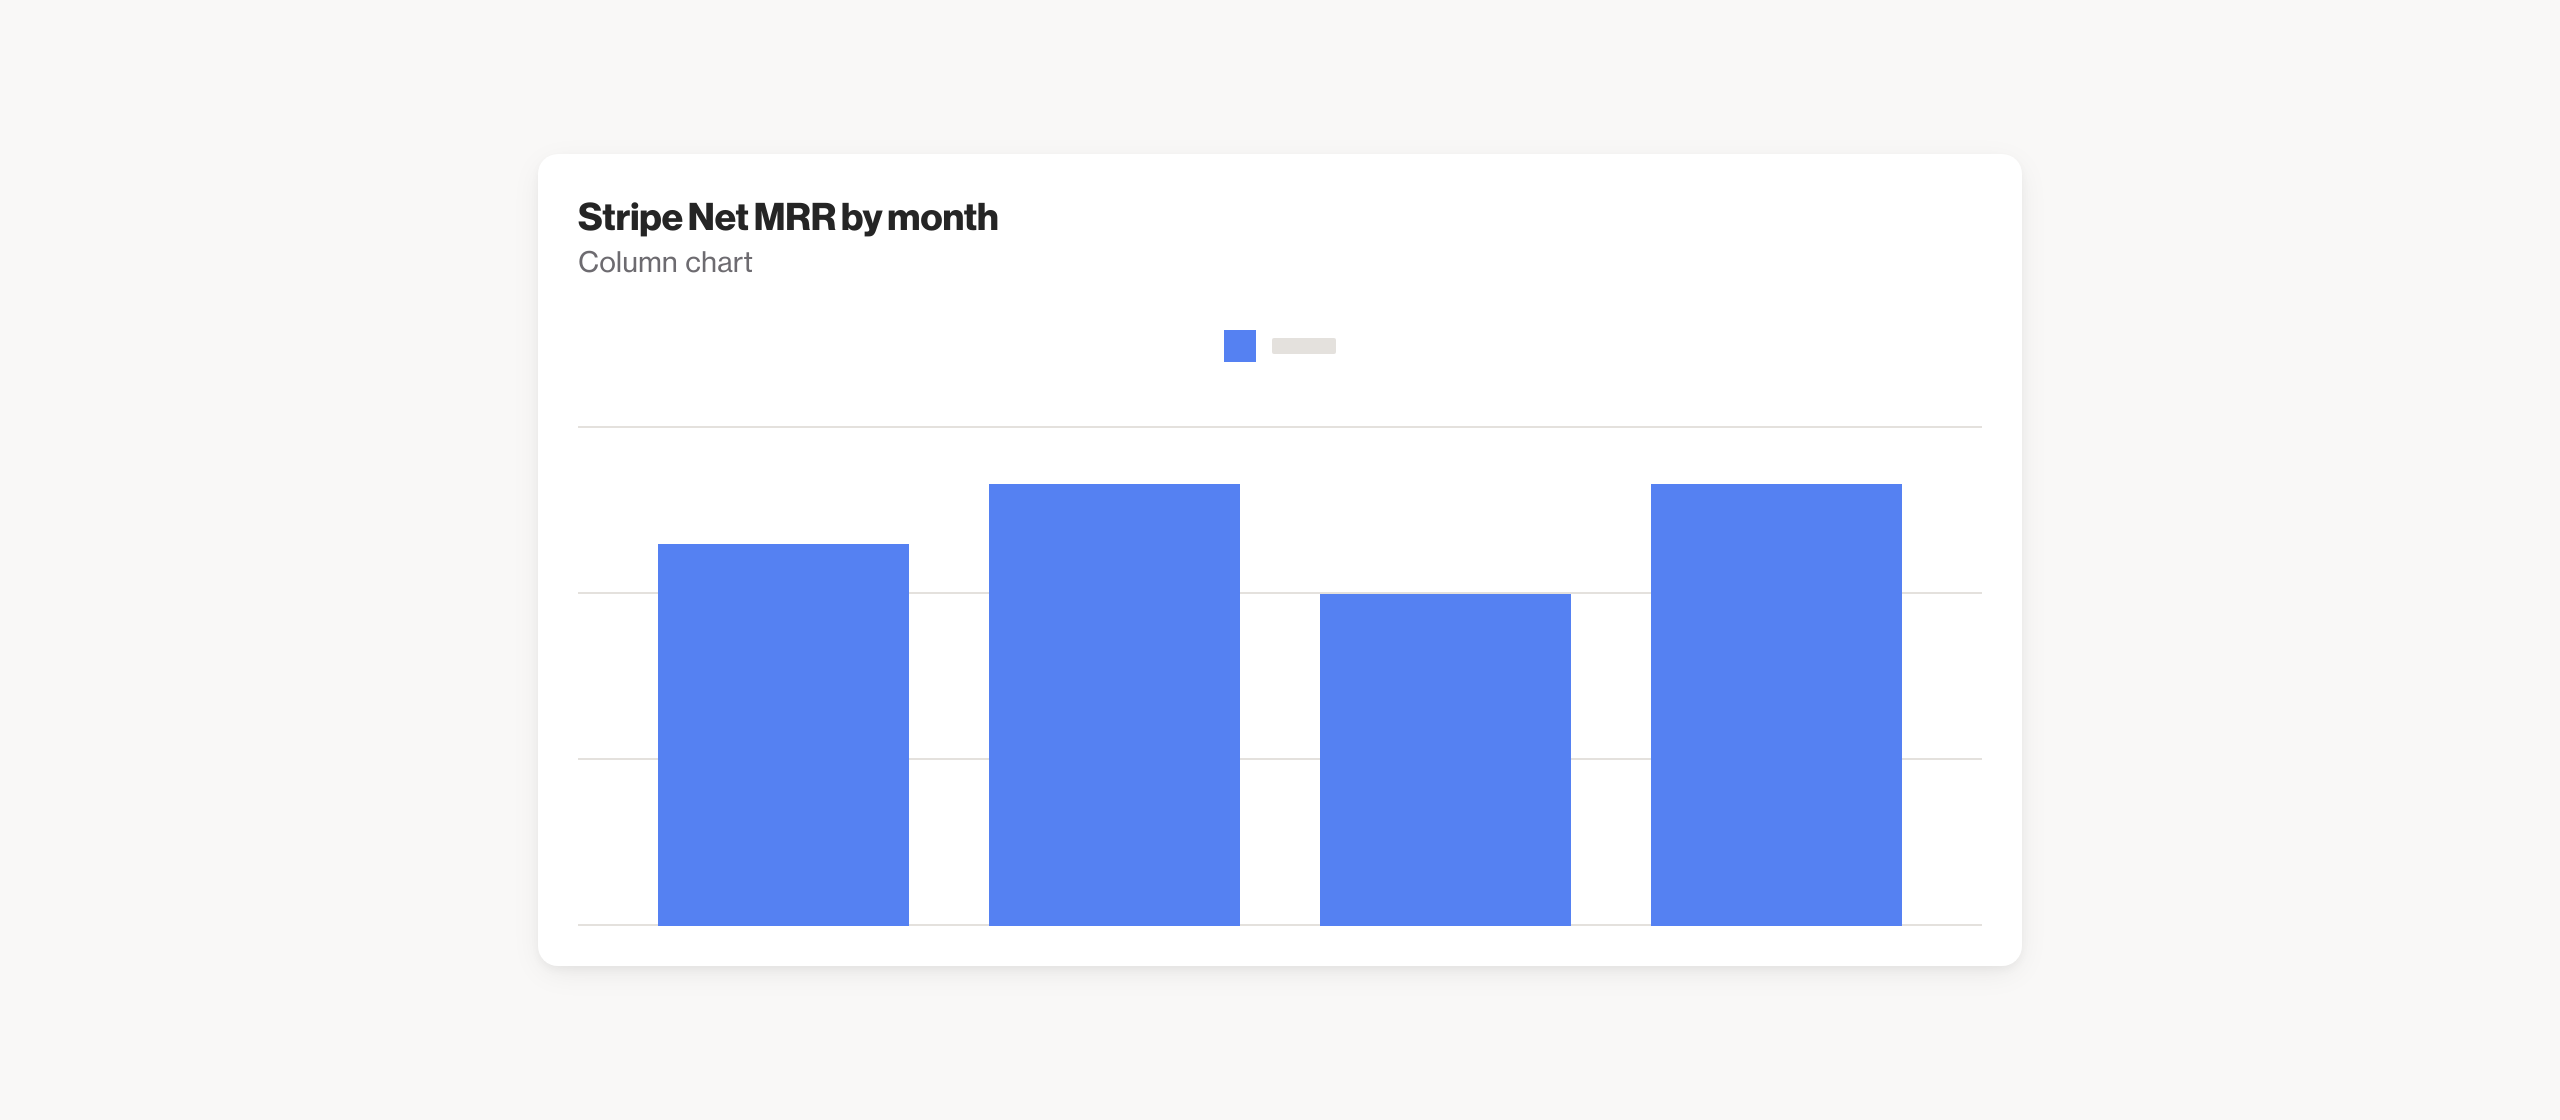 Stripe Net MRR by month